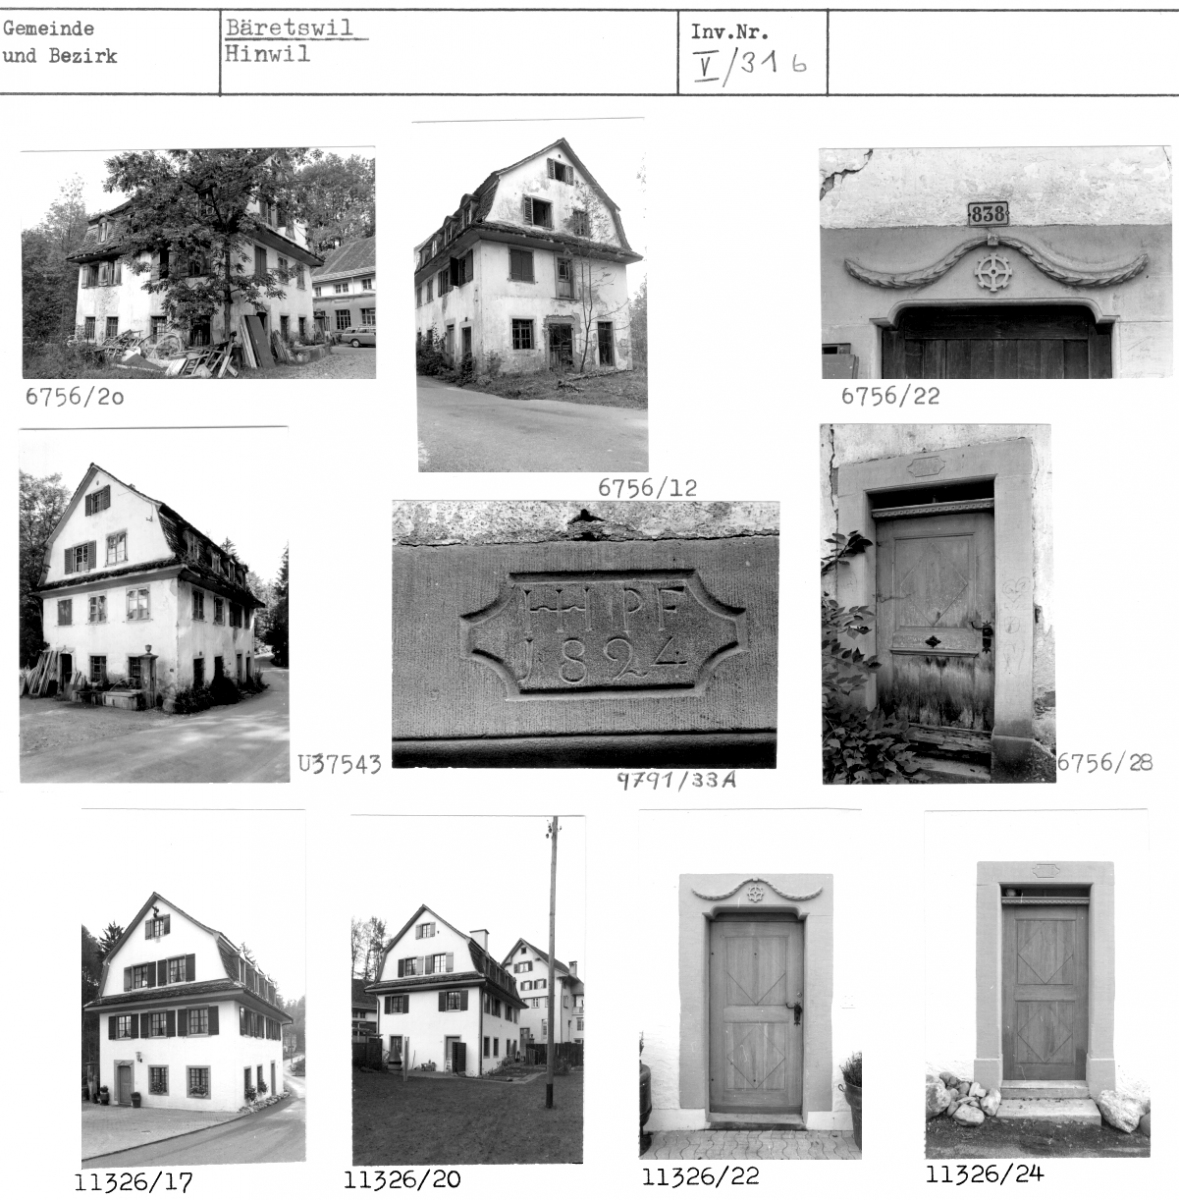 ehem. Nebenmühle (Reibe) mit Wohnung, 1824, Mühle, Bäretswil